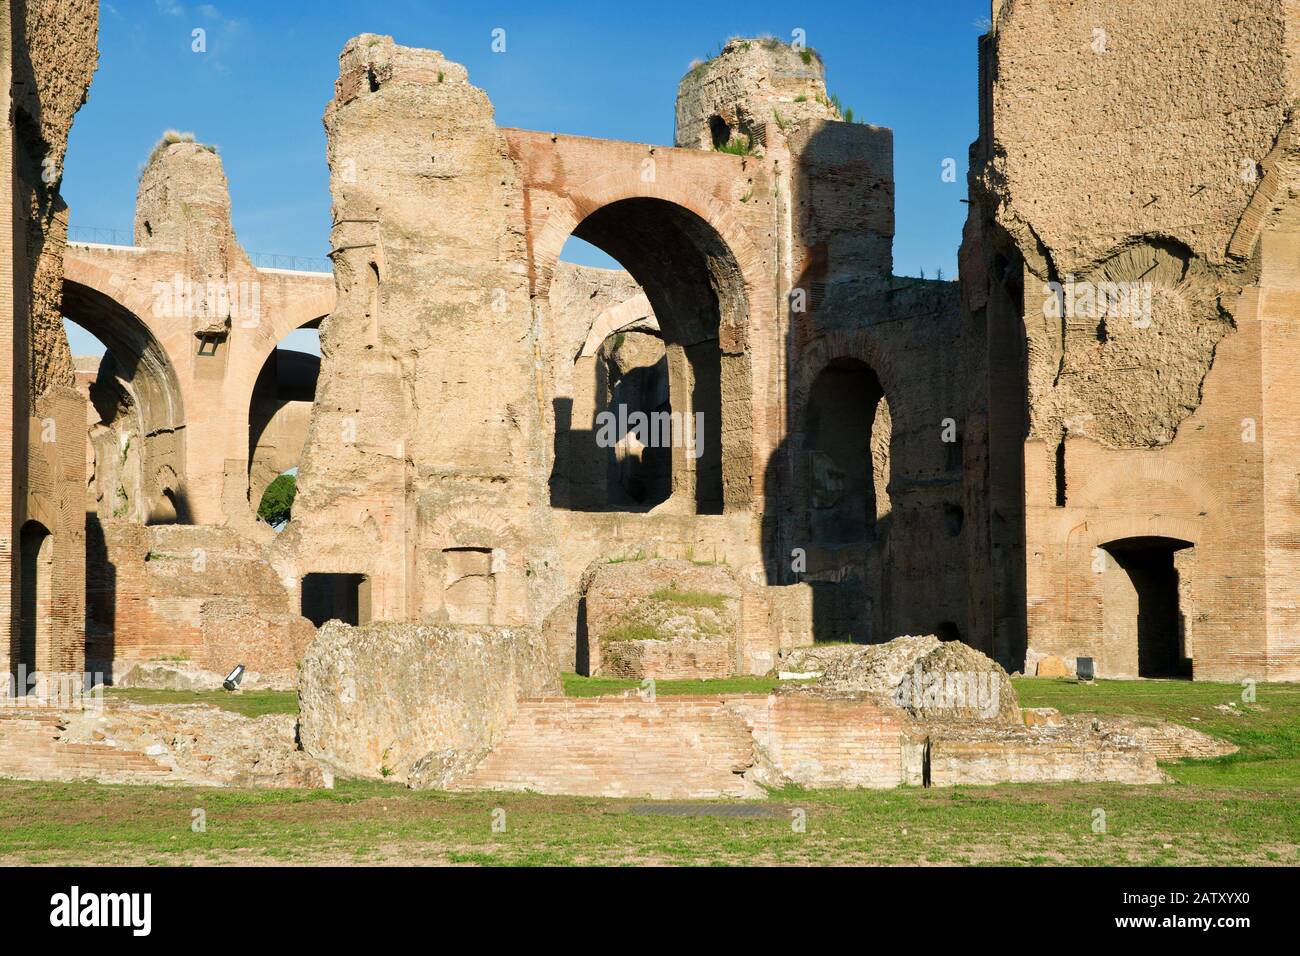 Les ruines des thermes de Caracalla, anciens bains publics romains, à Rome, Italie Banque D'Images